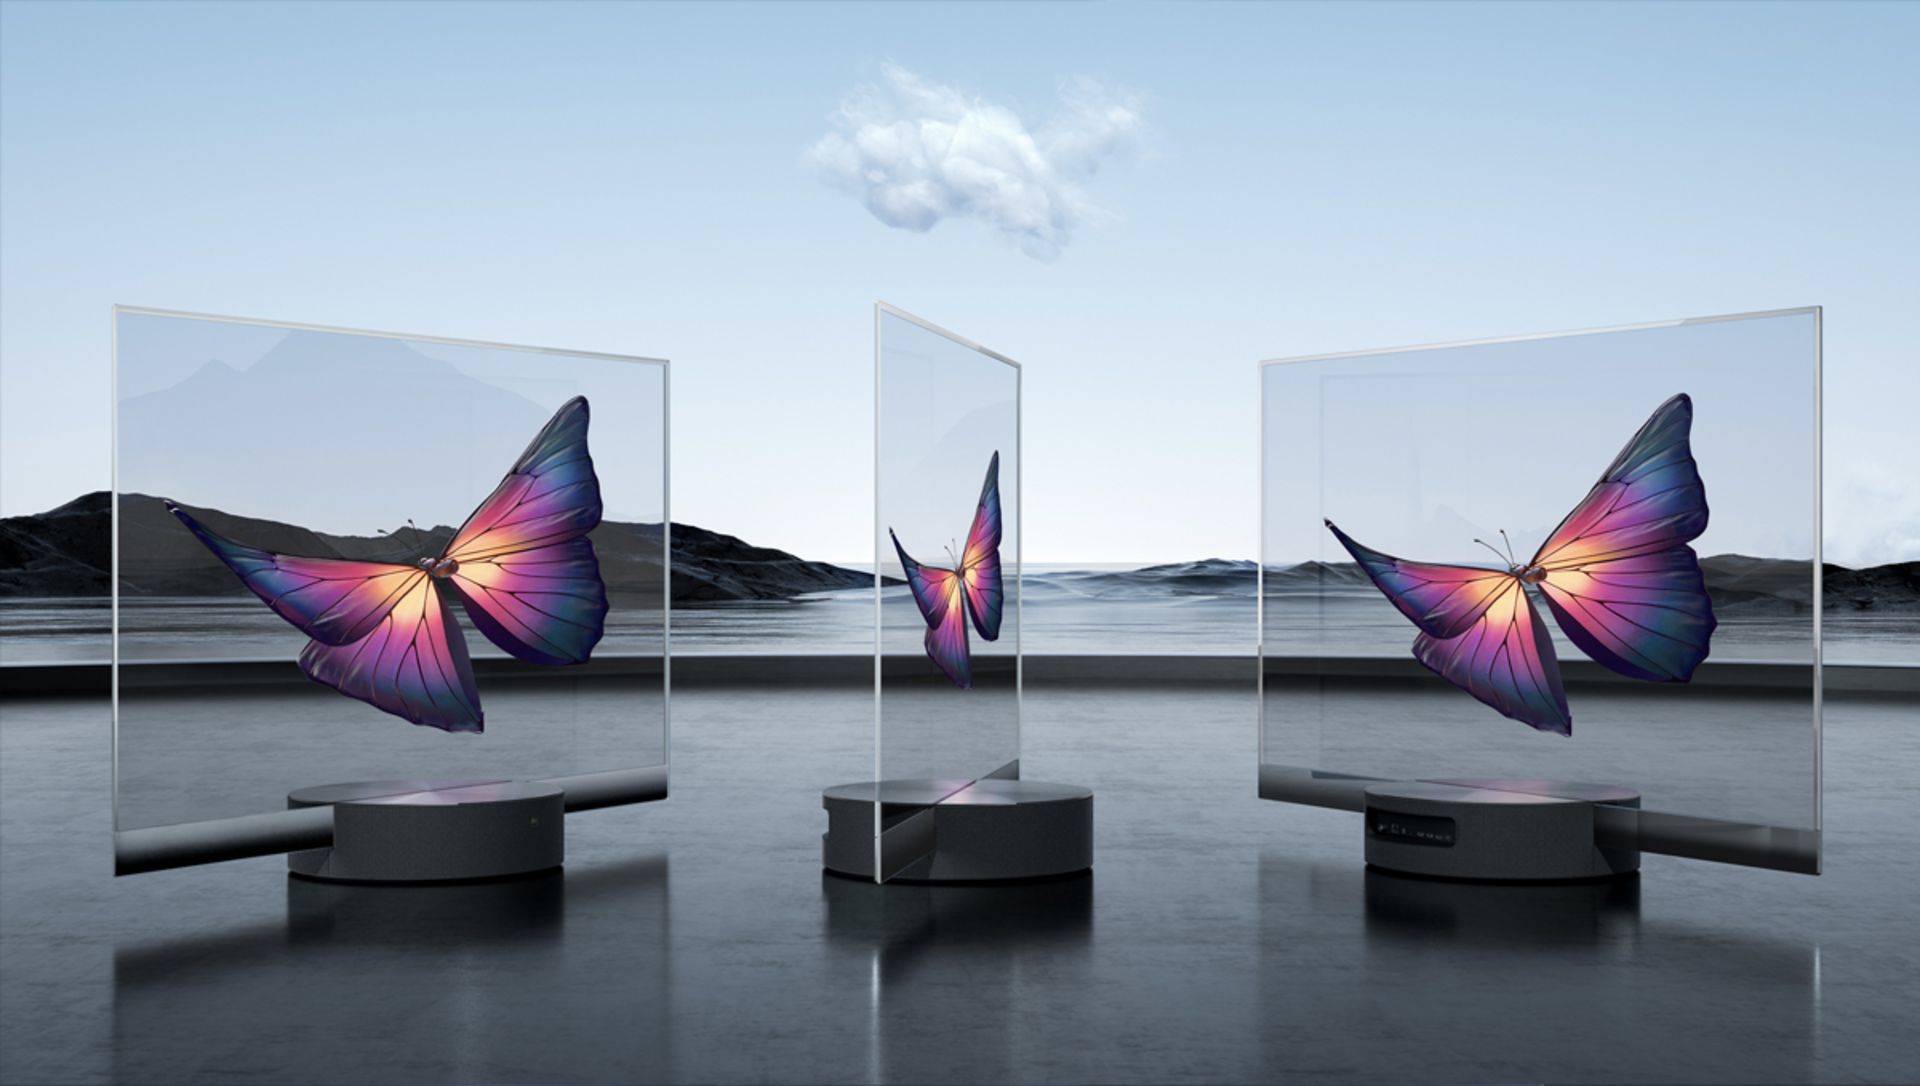 مرجع متخصصين ايران سه دستگاه شيائومي Mi TV Lux OLED Transparent Edition از جلو و نيم رخ در فضاي باز آسمان آبي